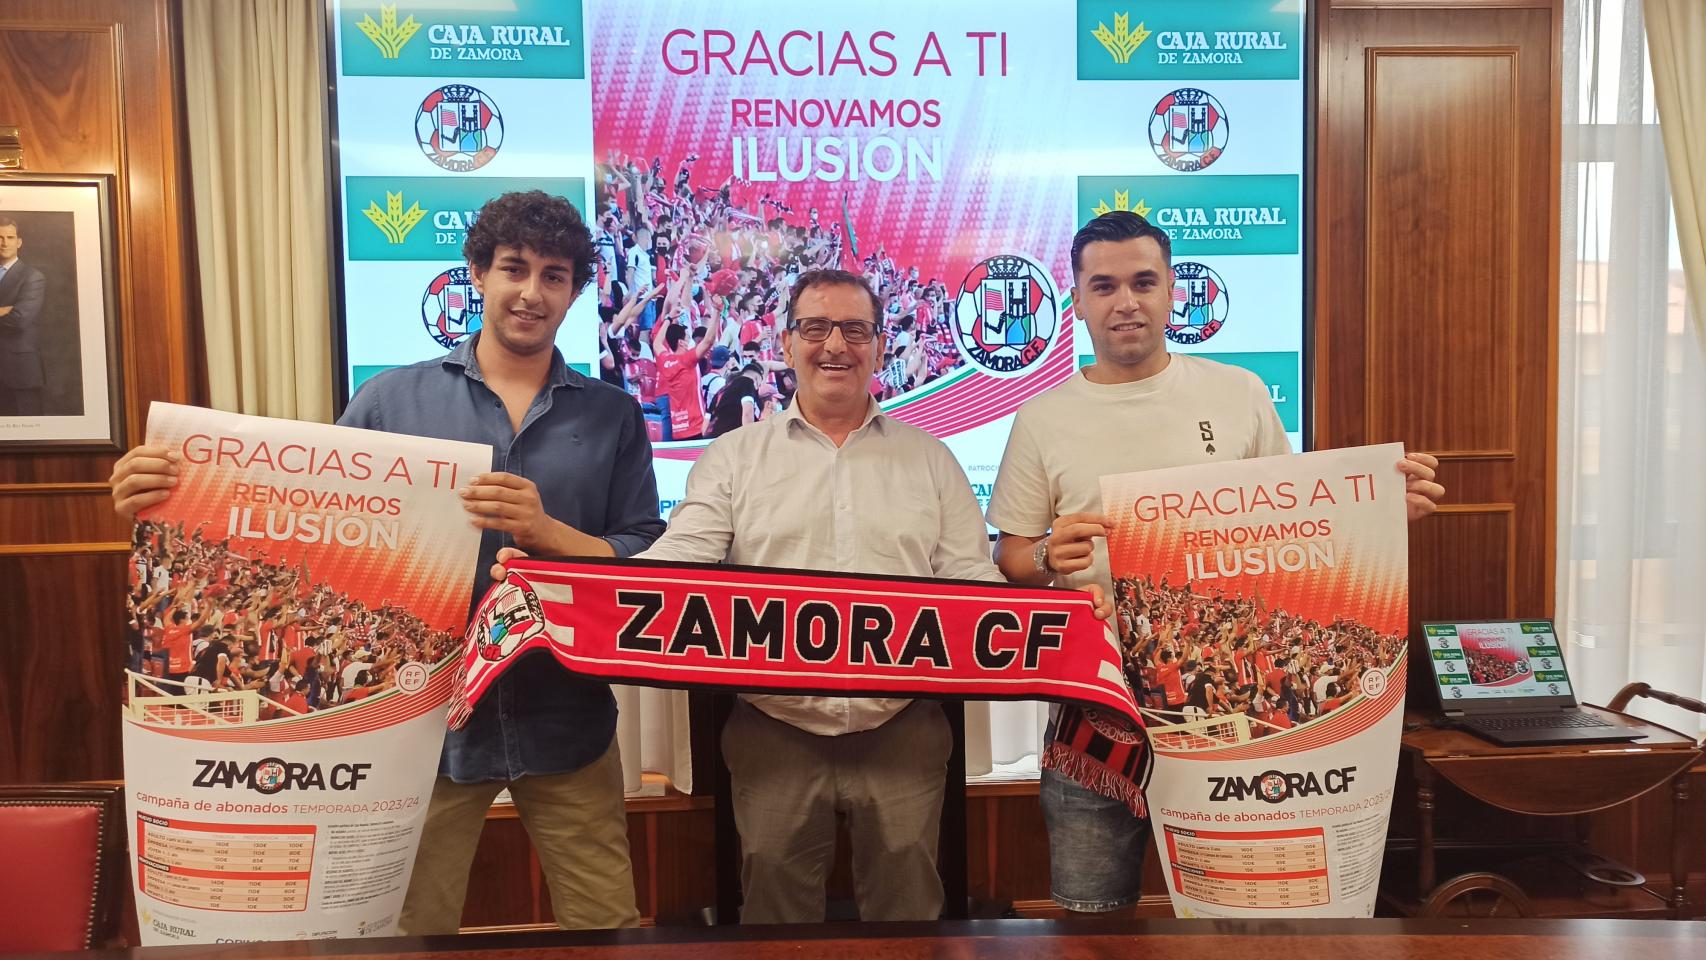 Caja Rural de Zamora acoge la presentación de la campaña de captación de socios del Zamora CF.